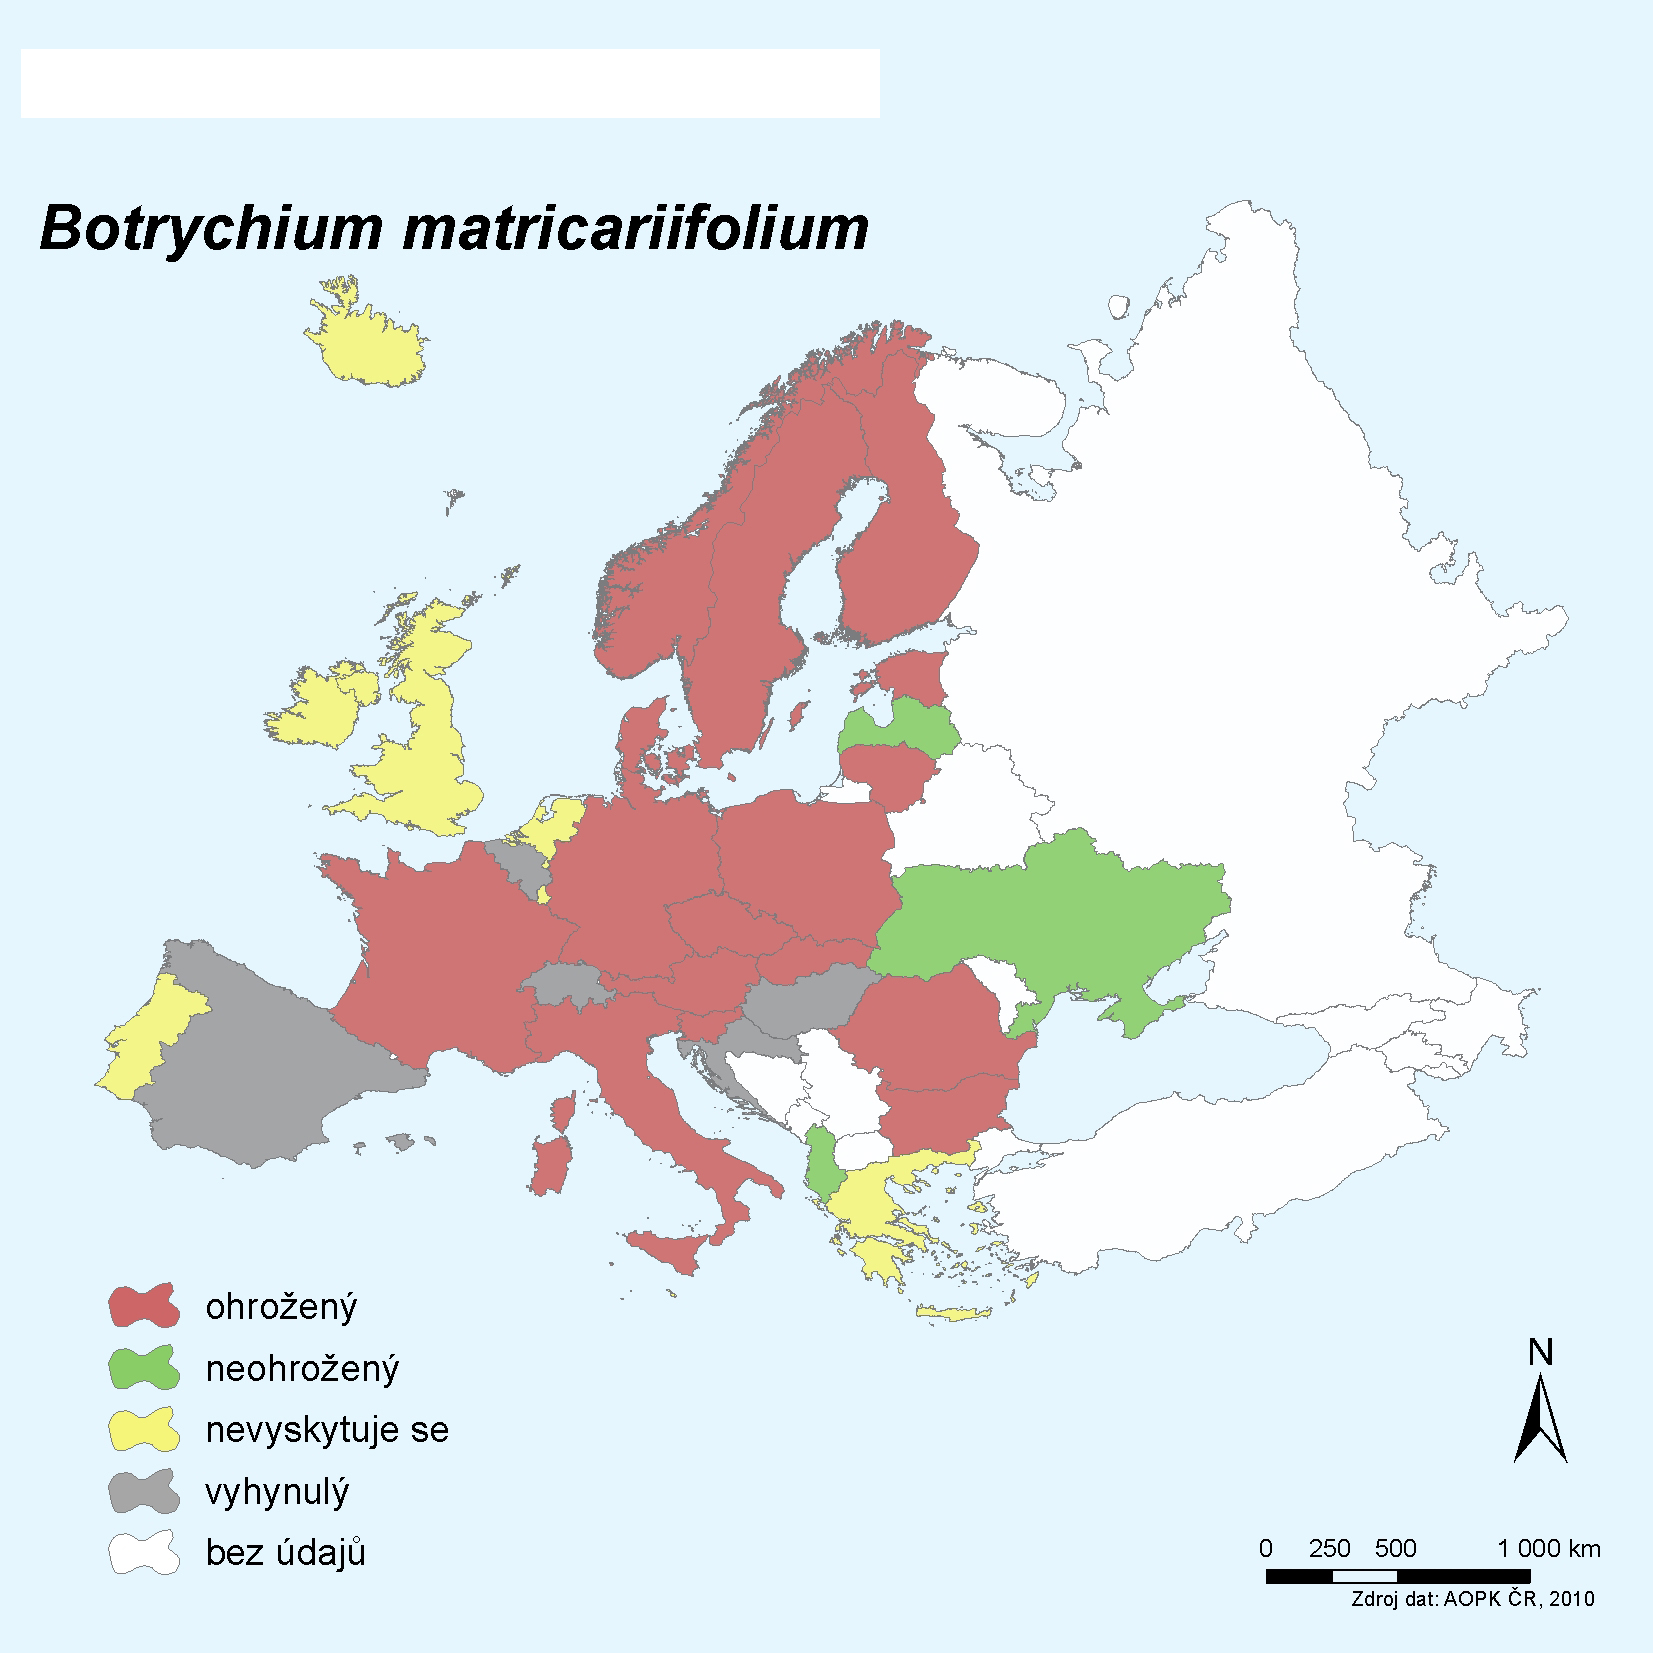 Ohrožení vratičky heřmánkolisté Botrychium matricariifolium v dalších evropských zemích. Červeně země, ve kterých je druh ohrožený, šedě – vyhynulý, zeleně – neohrožený, žlutě –  nevyskytuje se. Procento počtu zemí, ve kterých je druh ohrožený (započítány i země,  ve kterých je vyhynulý) z celkového počtu zemí, ve kterých se vyskytuje (vyskytoval):  (15+5)/23 = 87 %.